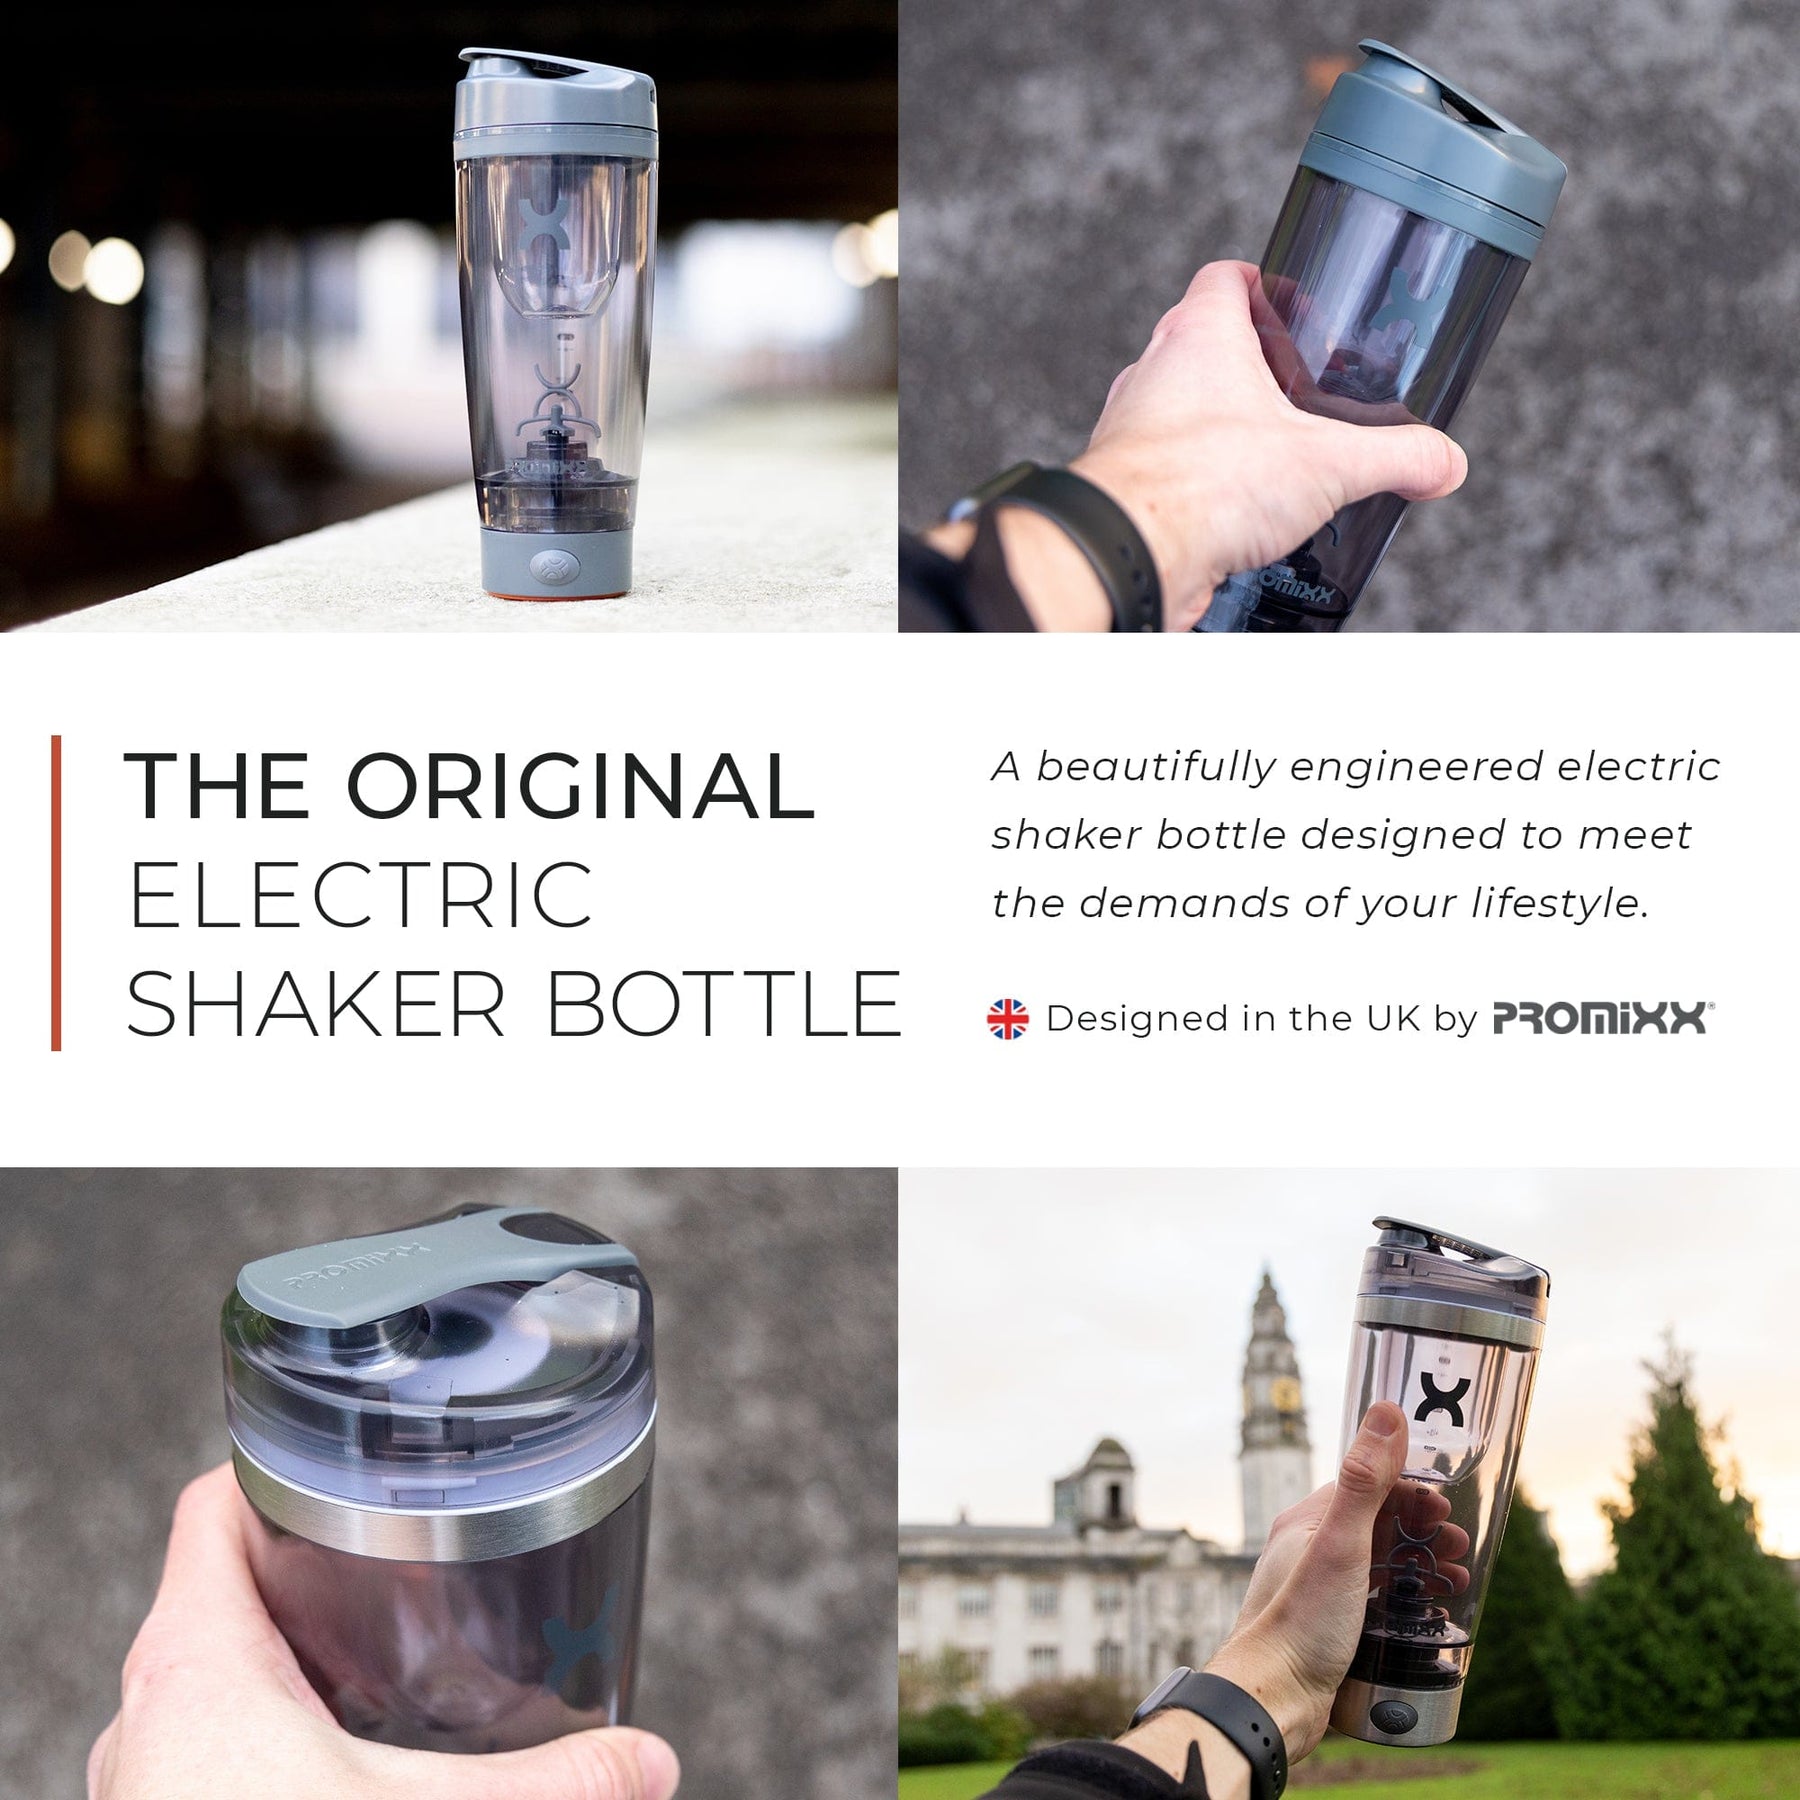 Electric Shaker Bottle?! 